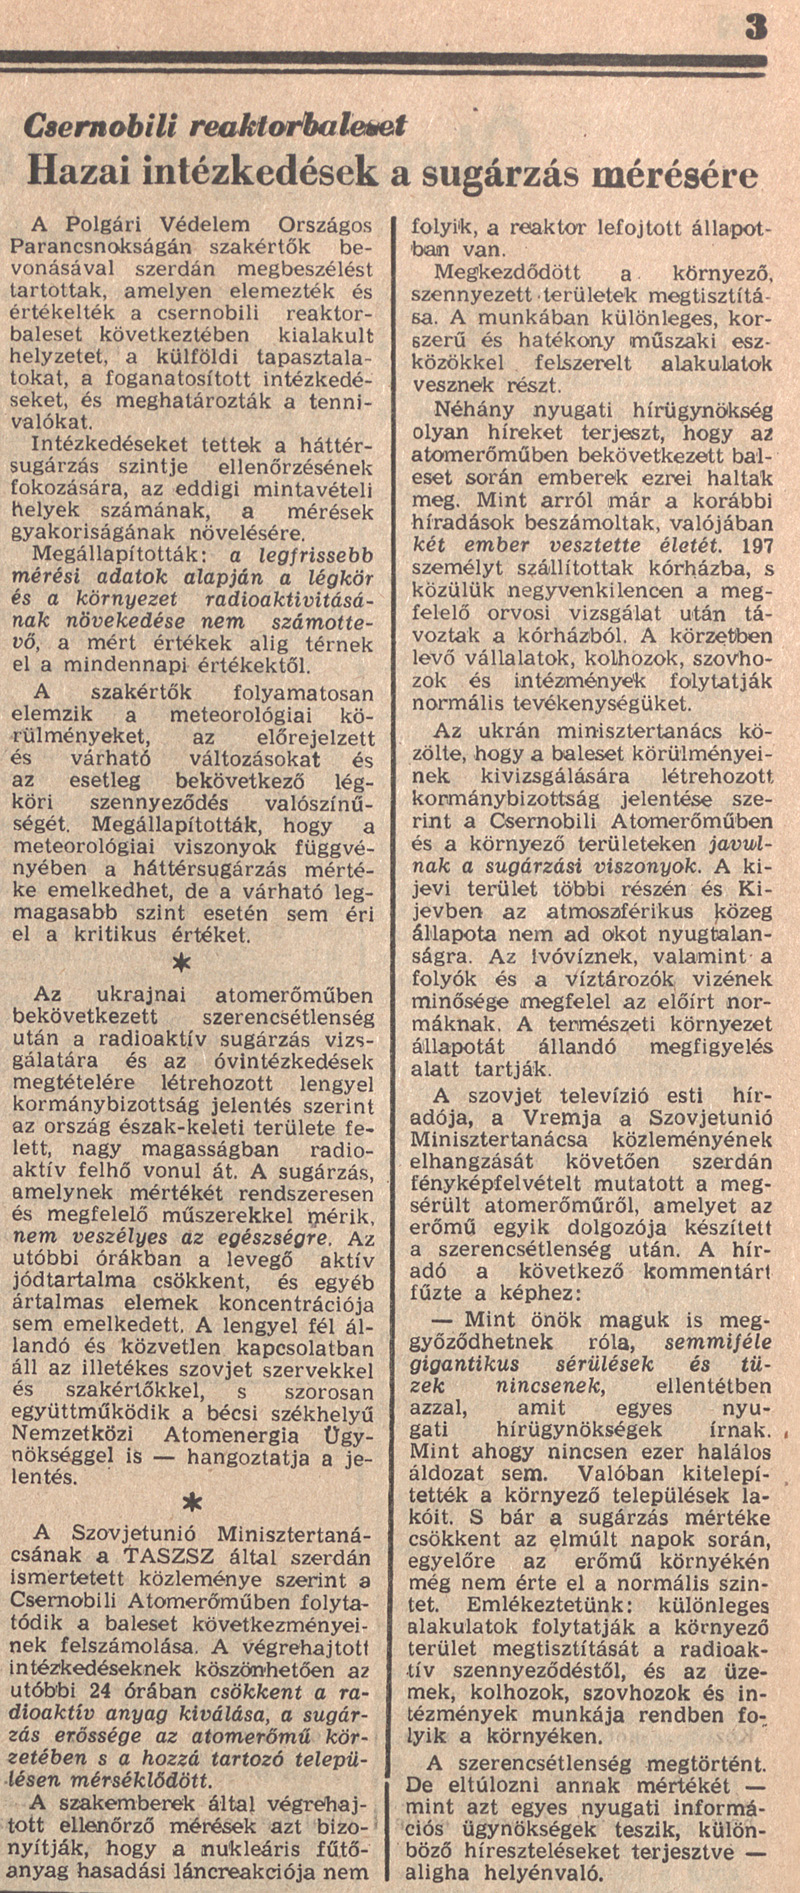 Magyar Nemzet 3. oldal. 1986. május 1. OSZK Törzsgyűjtemény